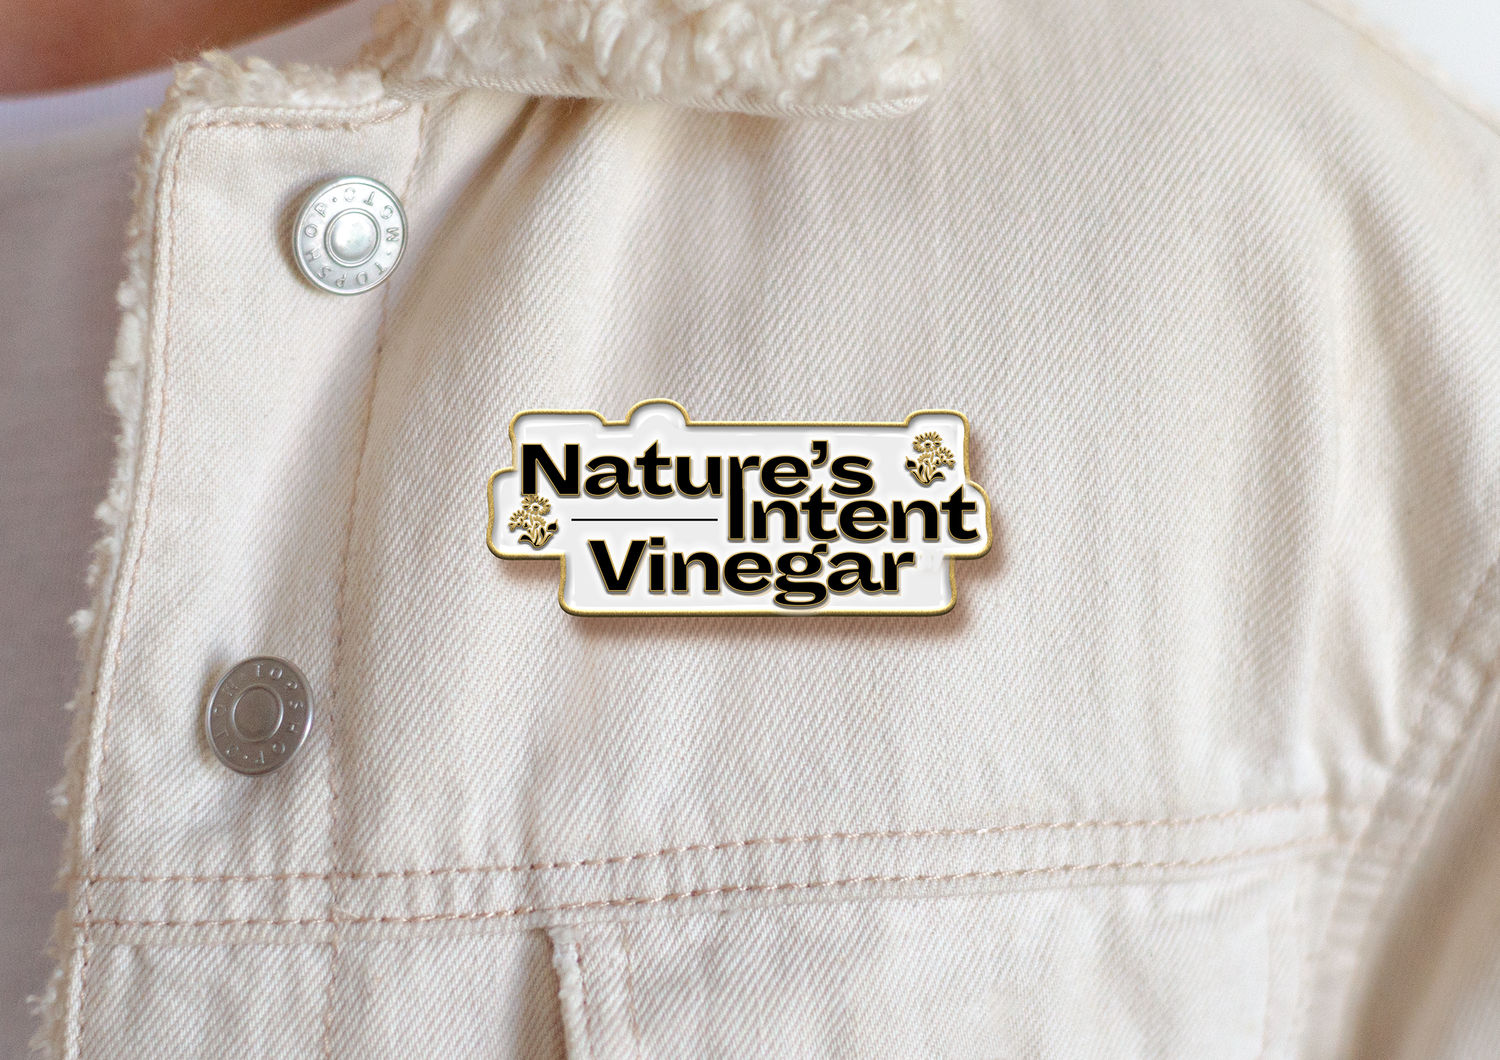 niv-logo-button